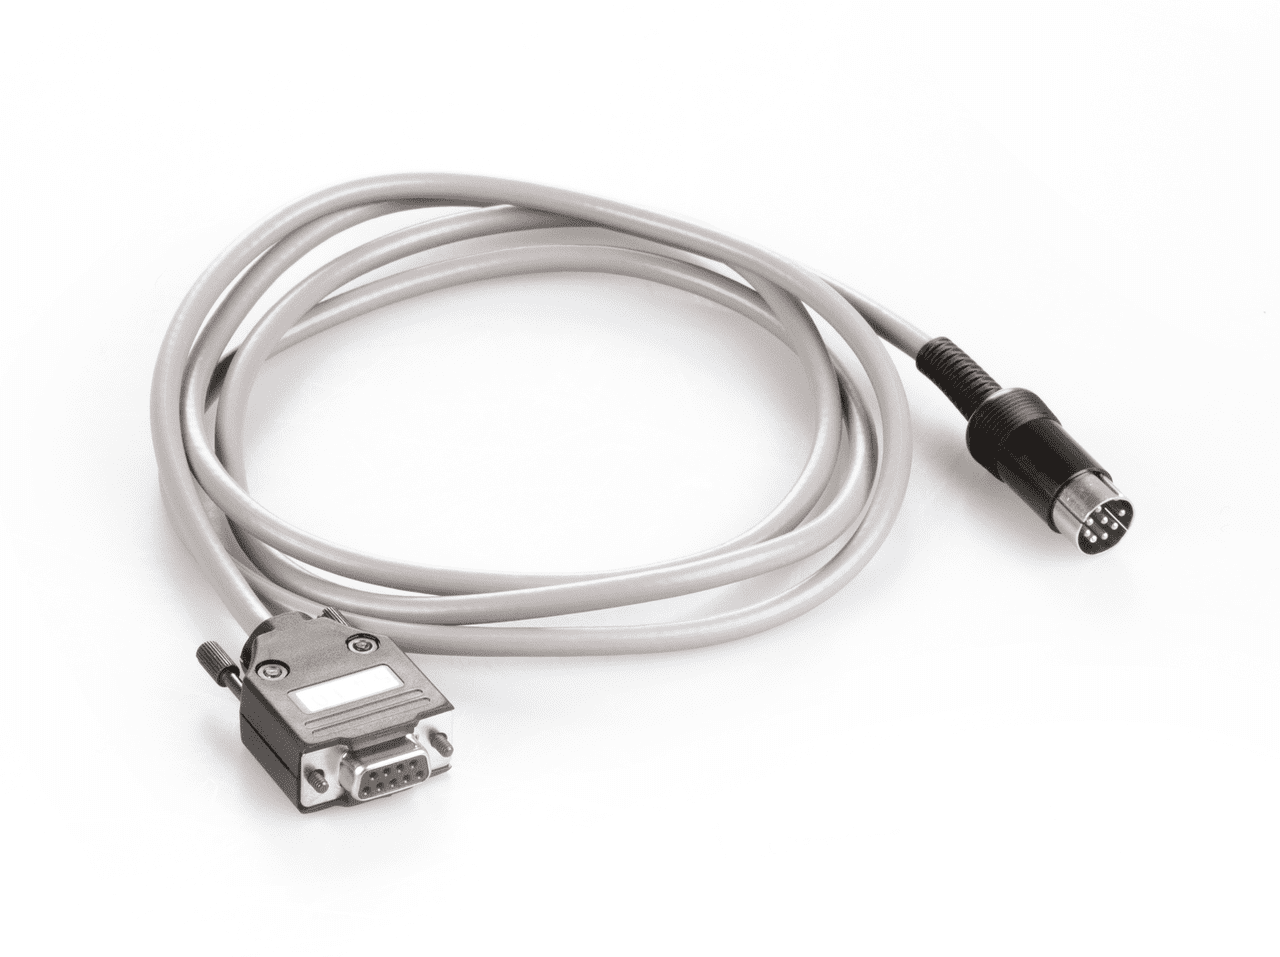 Aufgerolltes weißes Kabel auf weißem Hintergrund. An den Enden des Kabel befindet sich ein männlicher und ein weiblicher Stecker.